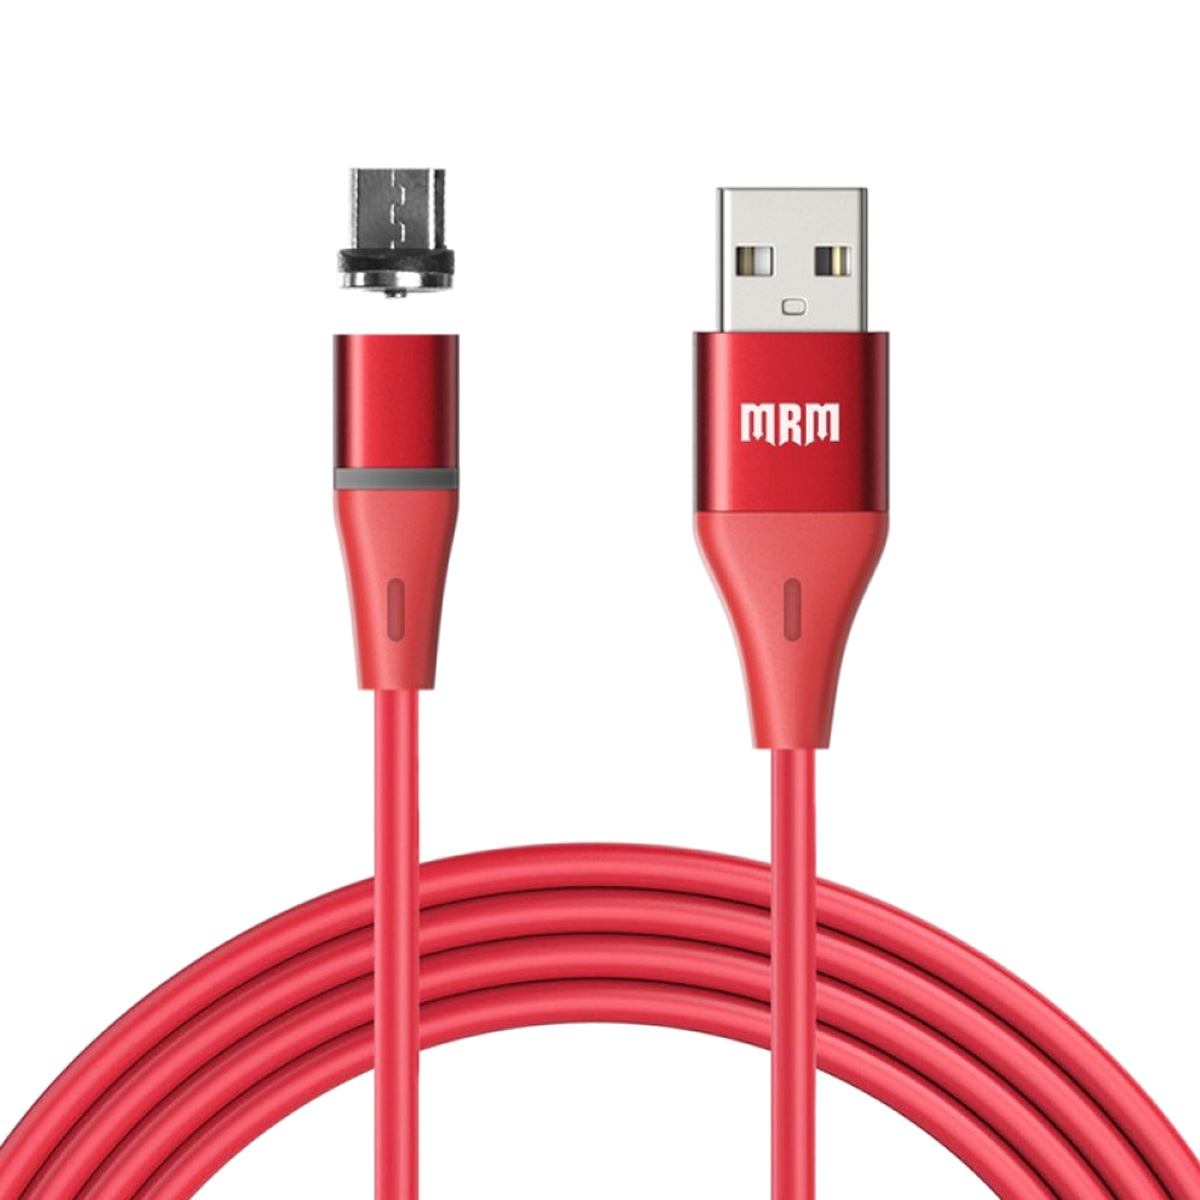 Магнитный зарядный кабель MRM 360m, длина 1 метр, с магнитной насадкой Micro USB, цвет красный